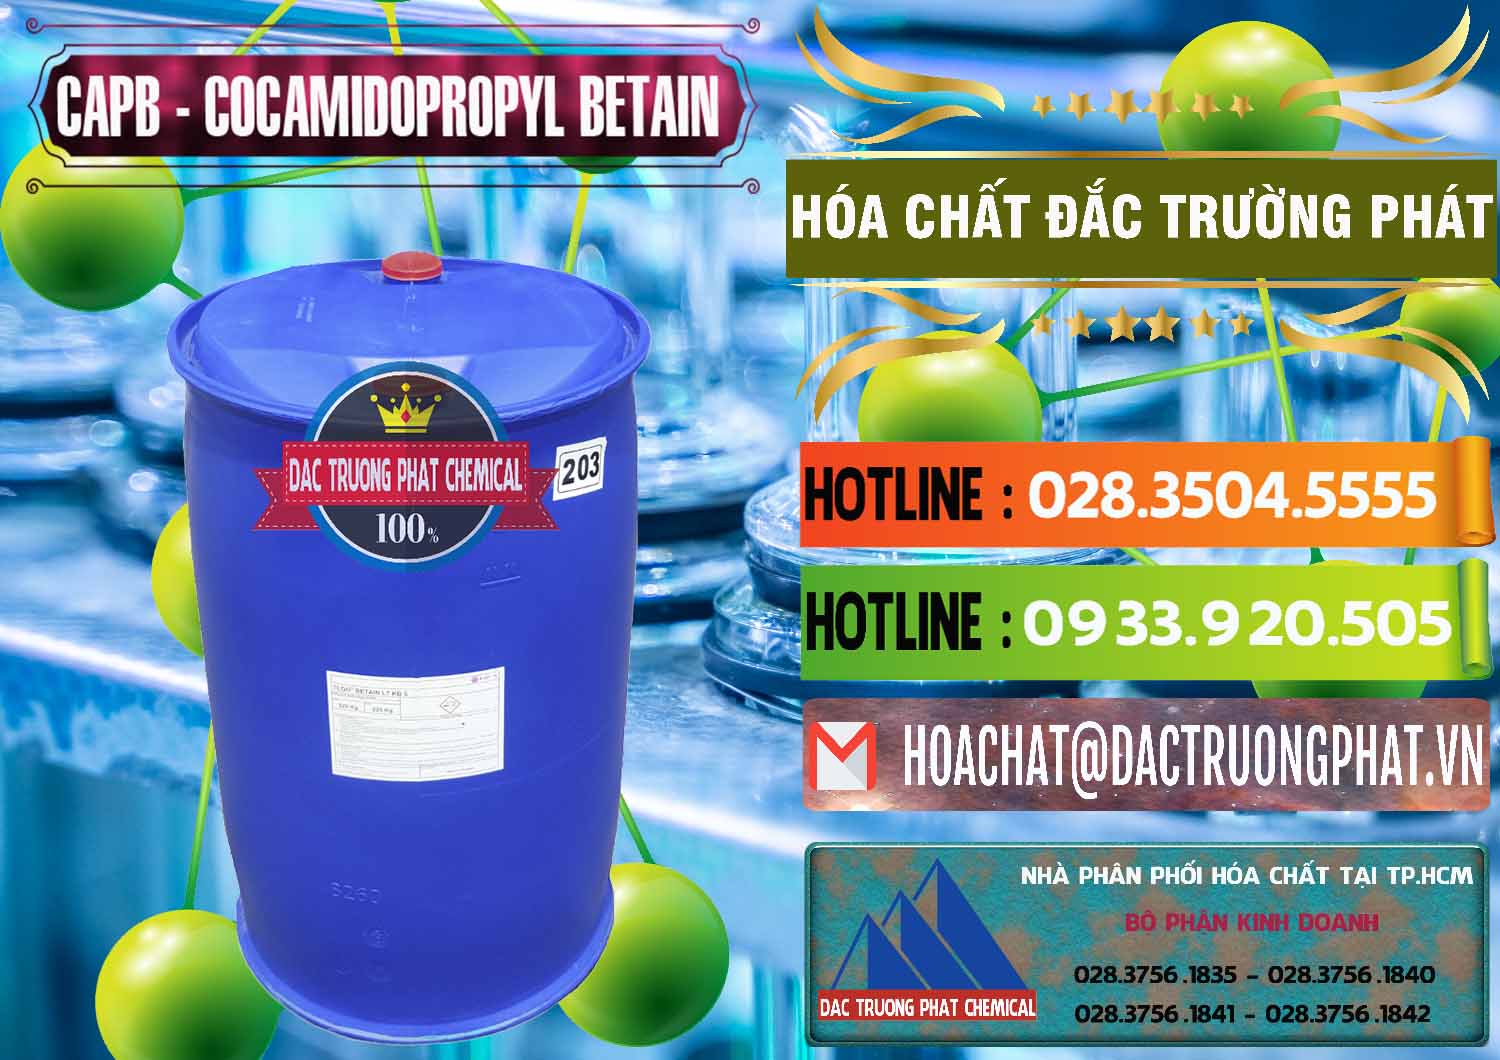 Chuyên bán - phân phối Cocamidopropyl Betaine - CAPB Tego Indonesia - 0327 - Đơn vị cung cấp & bán hóa chất tại TP.HCM - cungcaphoachat.com.vn